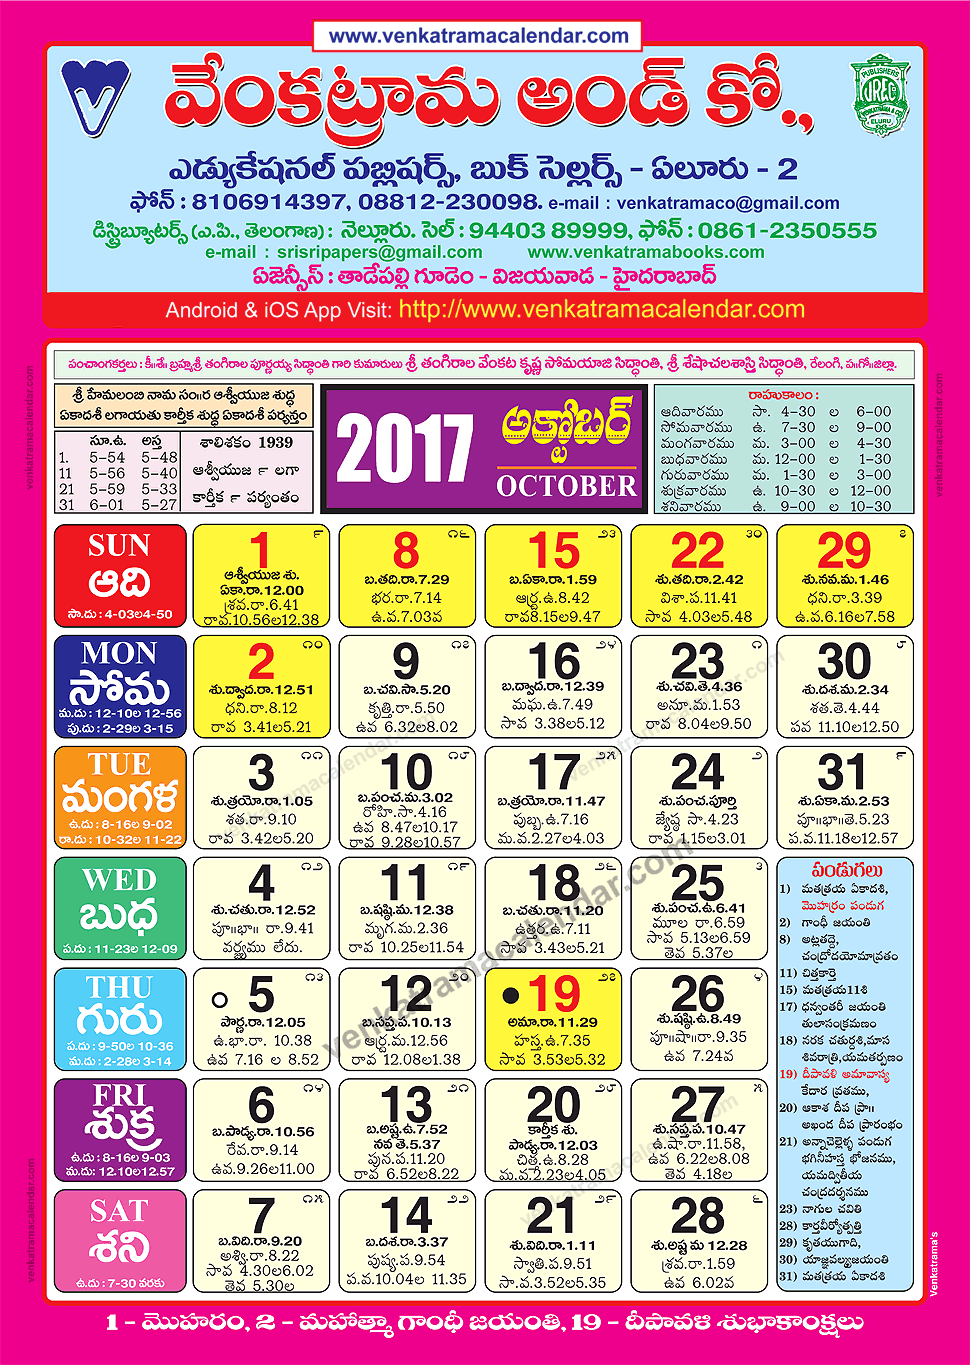 october-2017-venkatrama-co-colour-telugu-calendar-2017-festivals-holidays